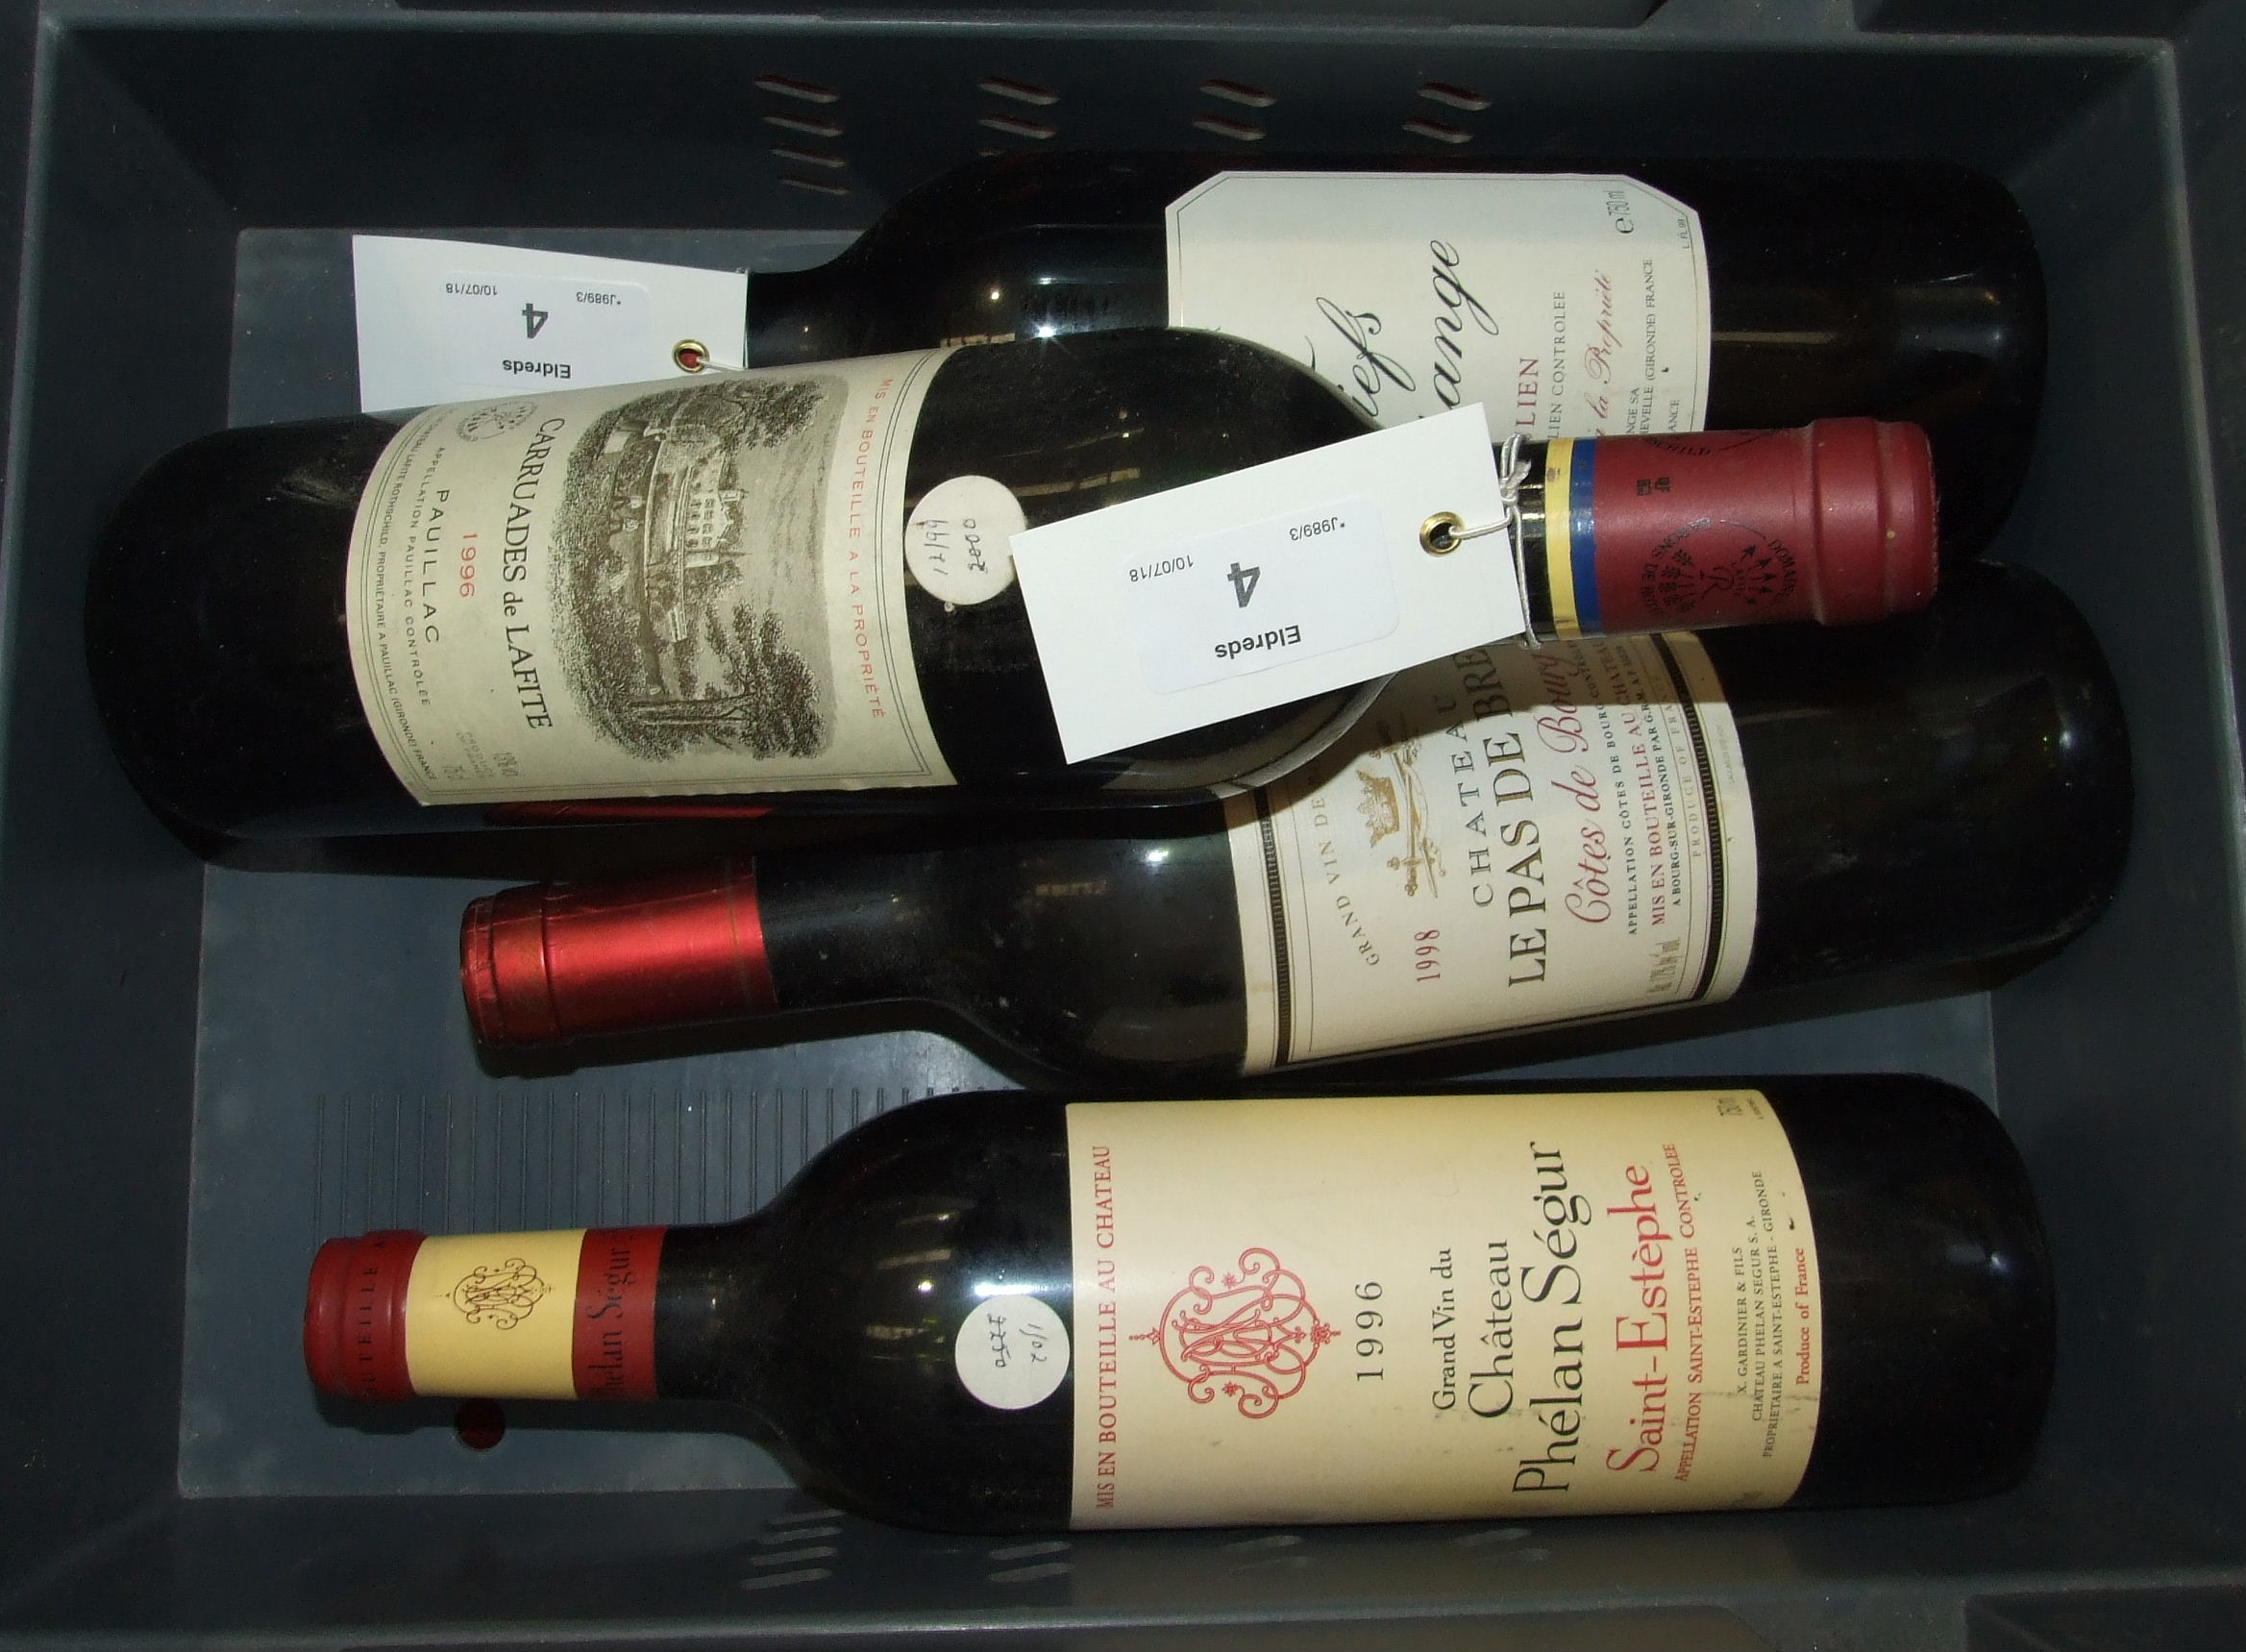 Carruades de Lafite 1996, Pauillac, 1 bottle, Chateau Phelan Segur Saint-Estephe, 1 bottle, Les